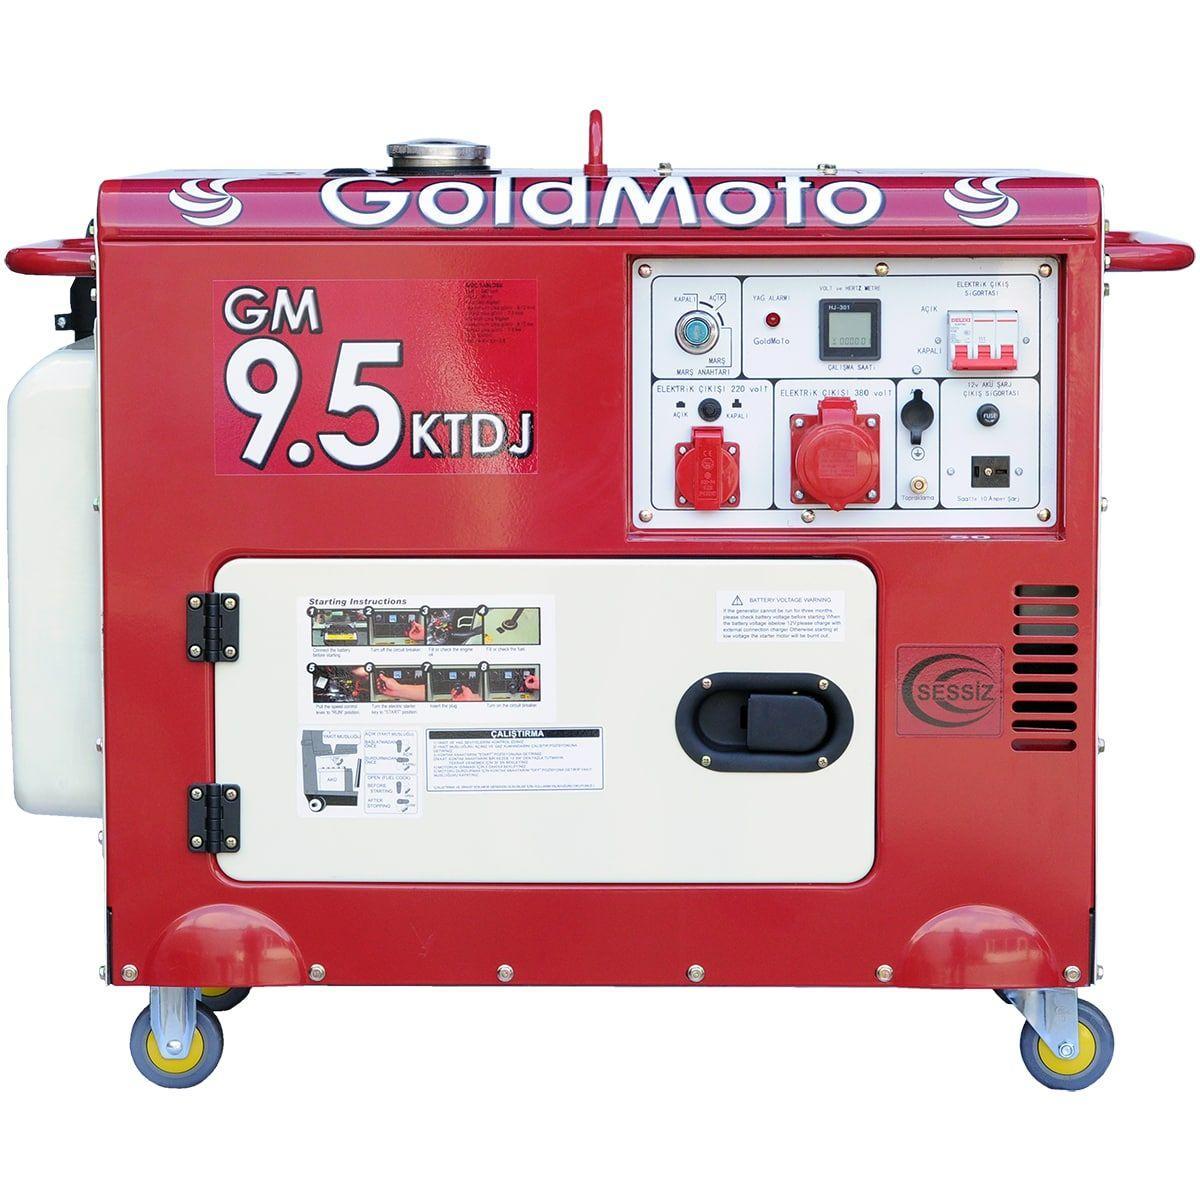 Инструкция генератор GoldMoto GM9.5KTDJ